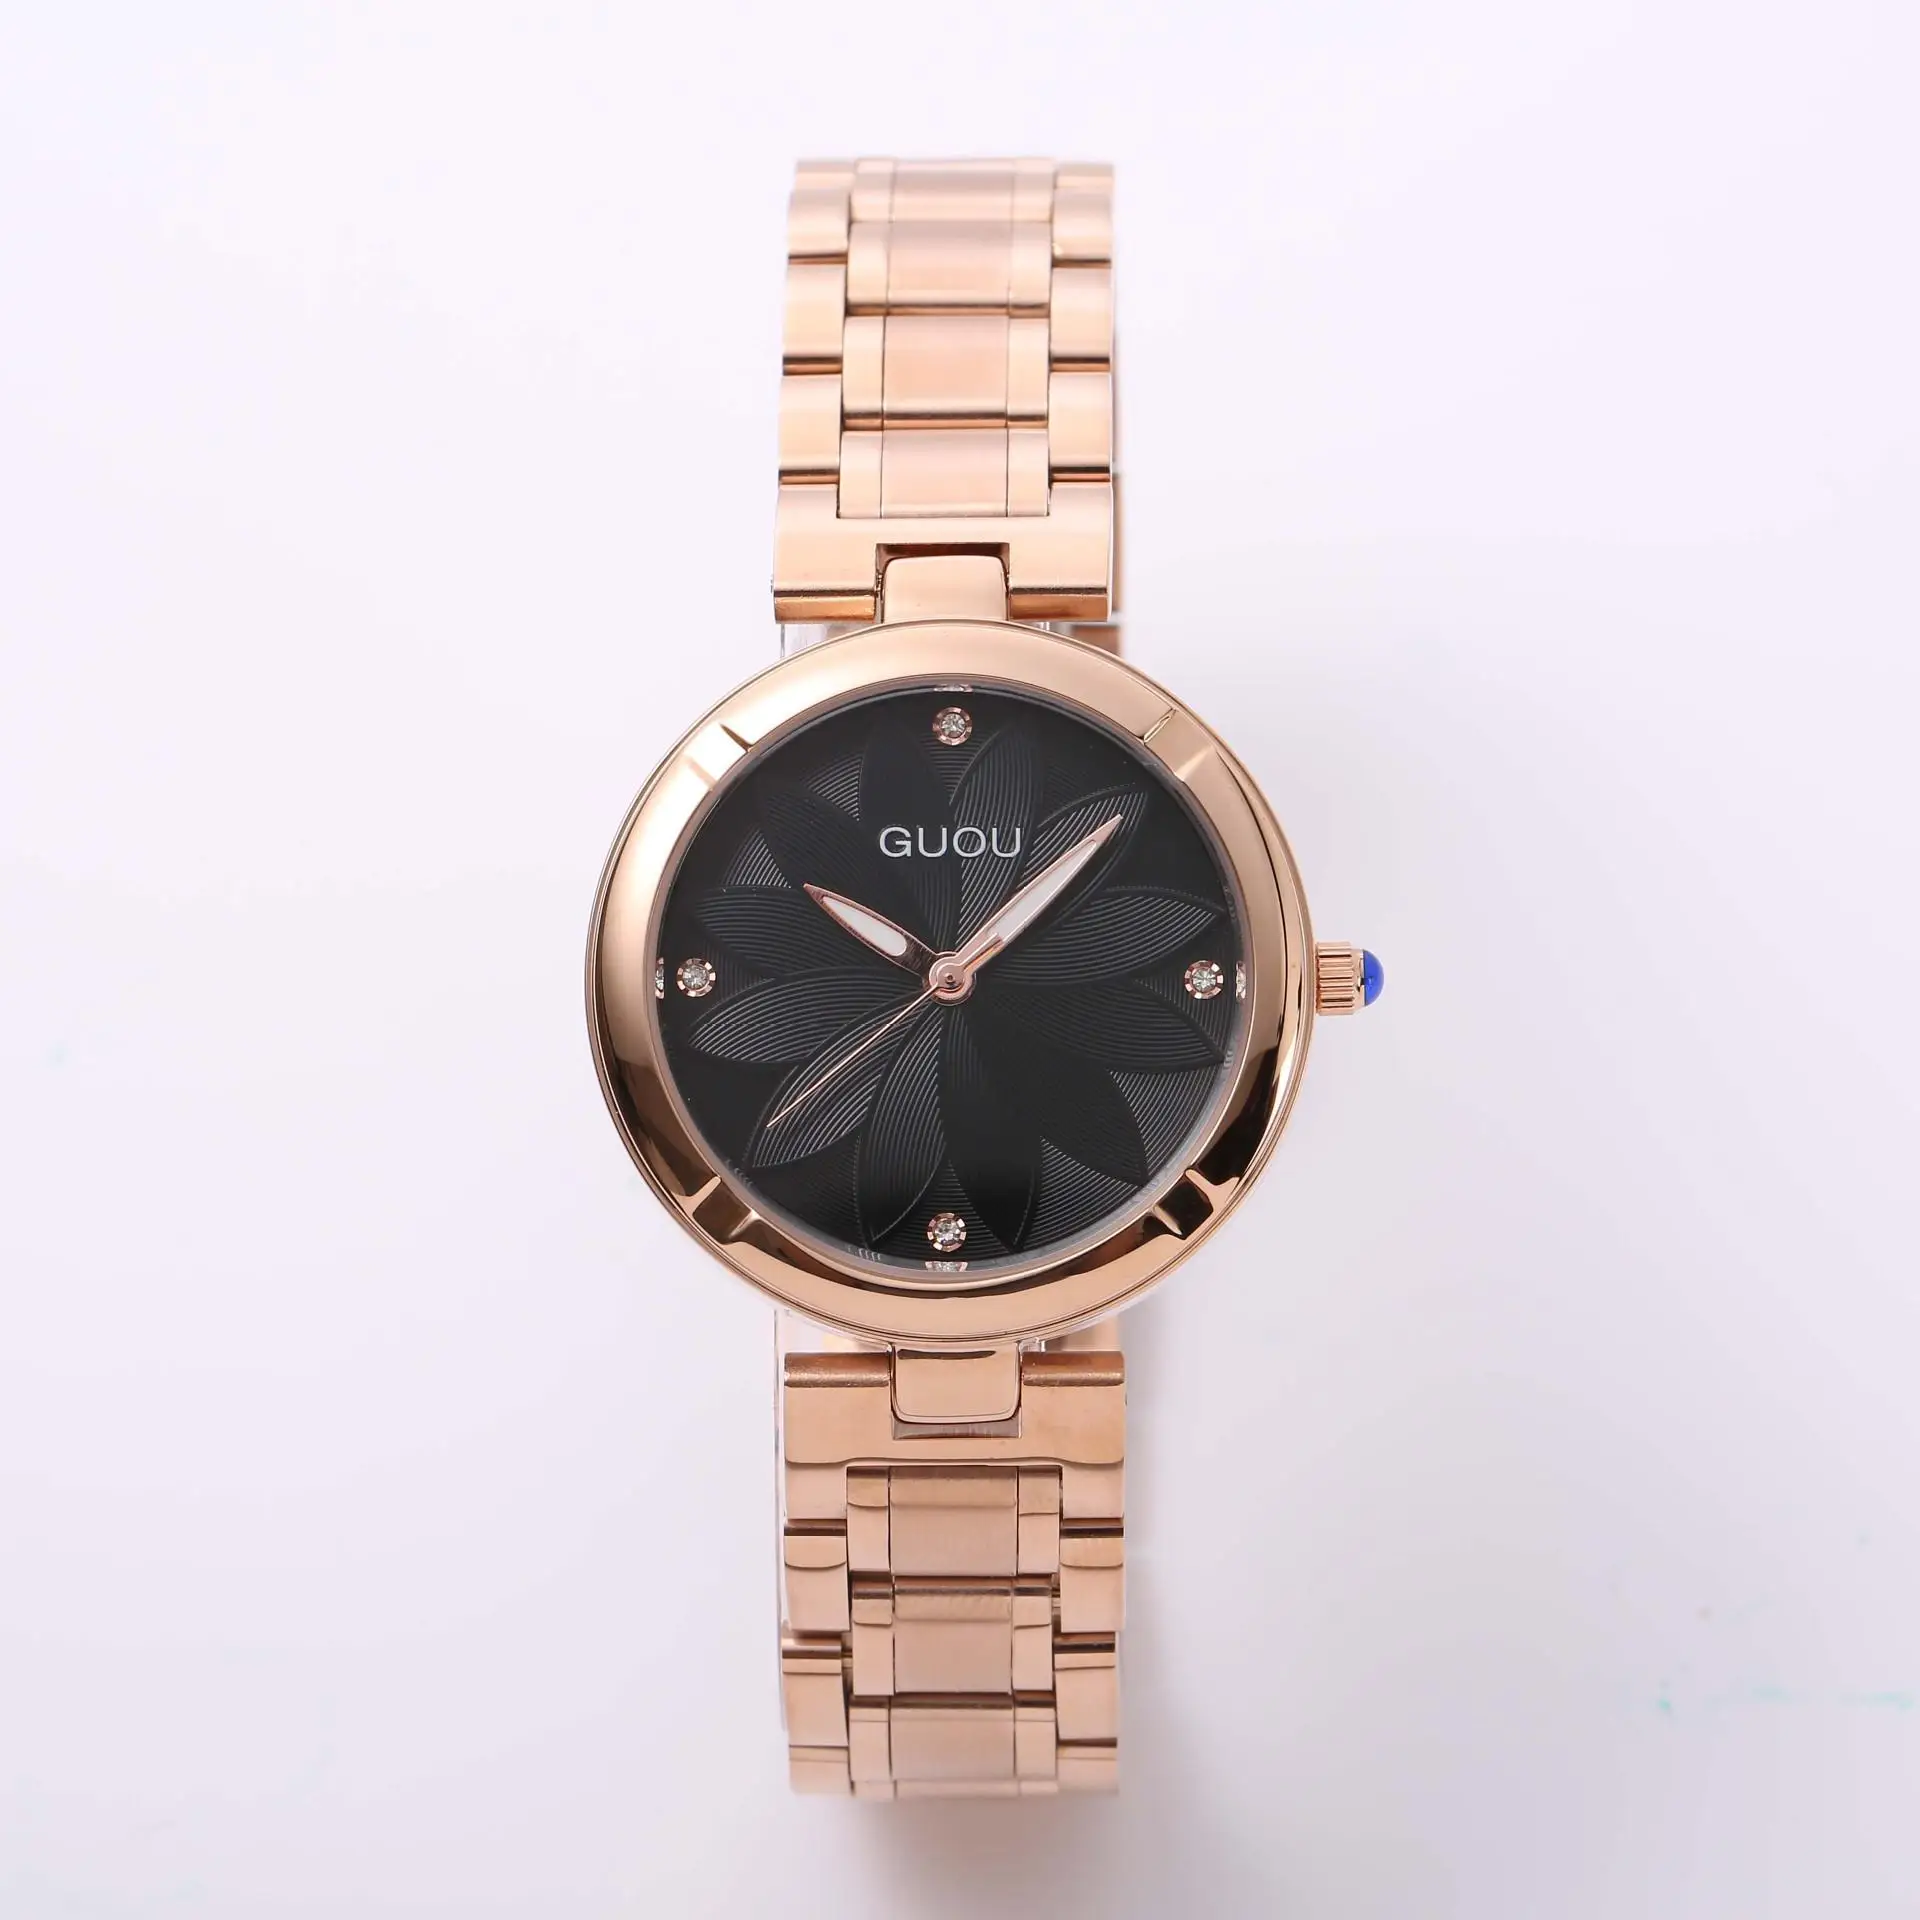 Новая мода Guou брендовые роскошные женские часы из натуральной кожи или часы из розовой стали простые повседневные женские часы подарок - Цвет: Black Steel